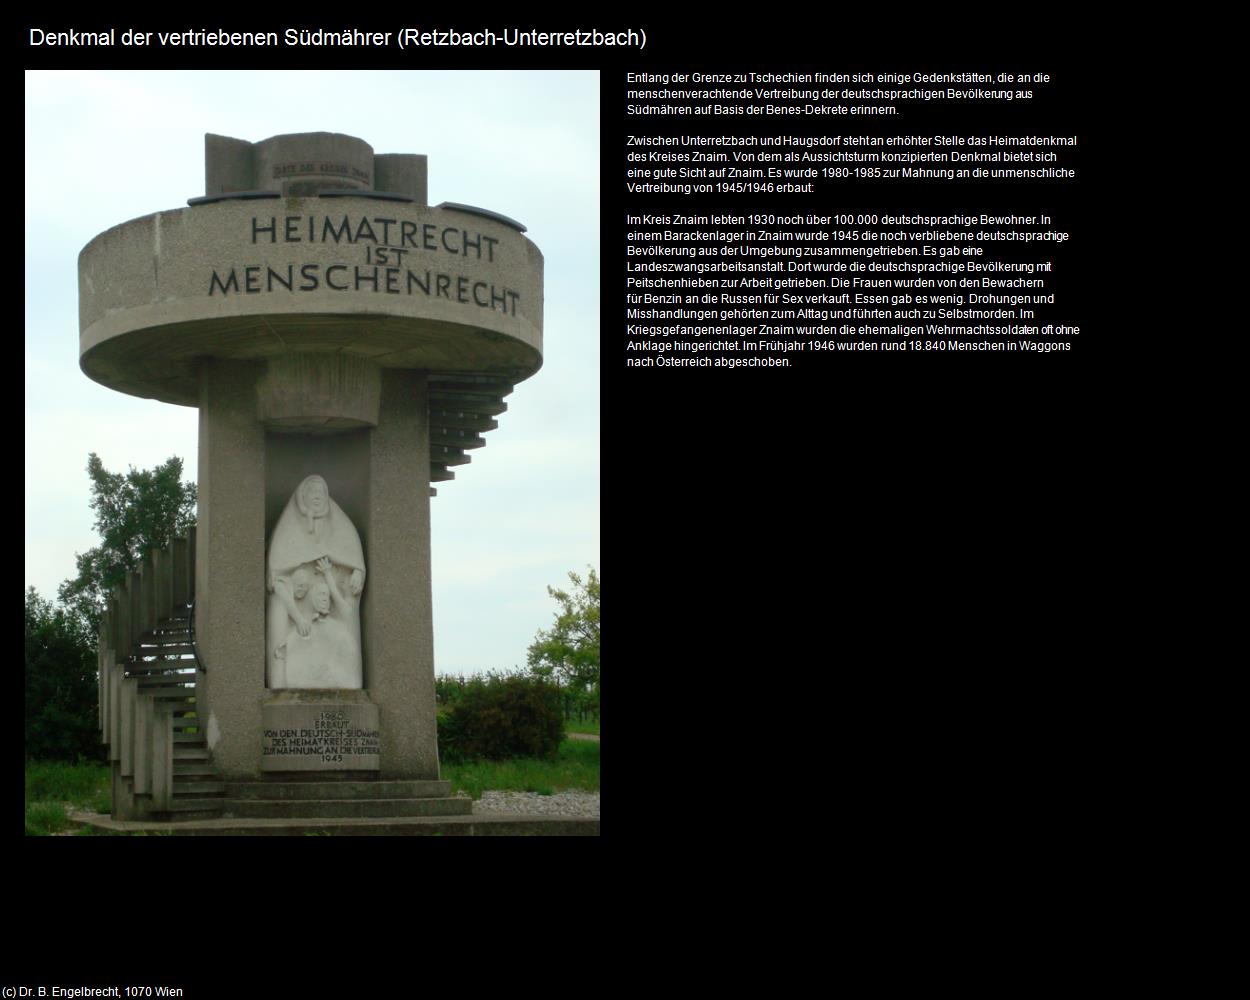 Denkmal der vertriebenen Südmährer (Unterretzbach) (Retzbach) in Kulturatlas-NIEDERÖSTERREICH